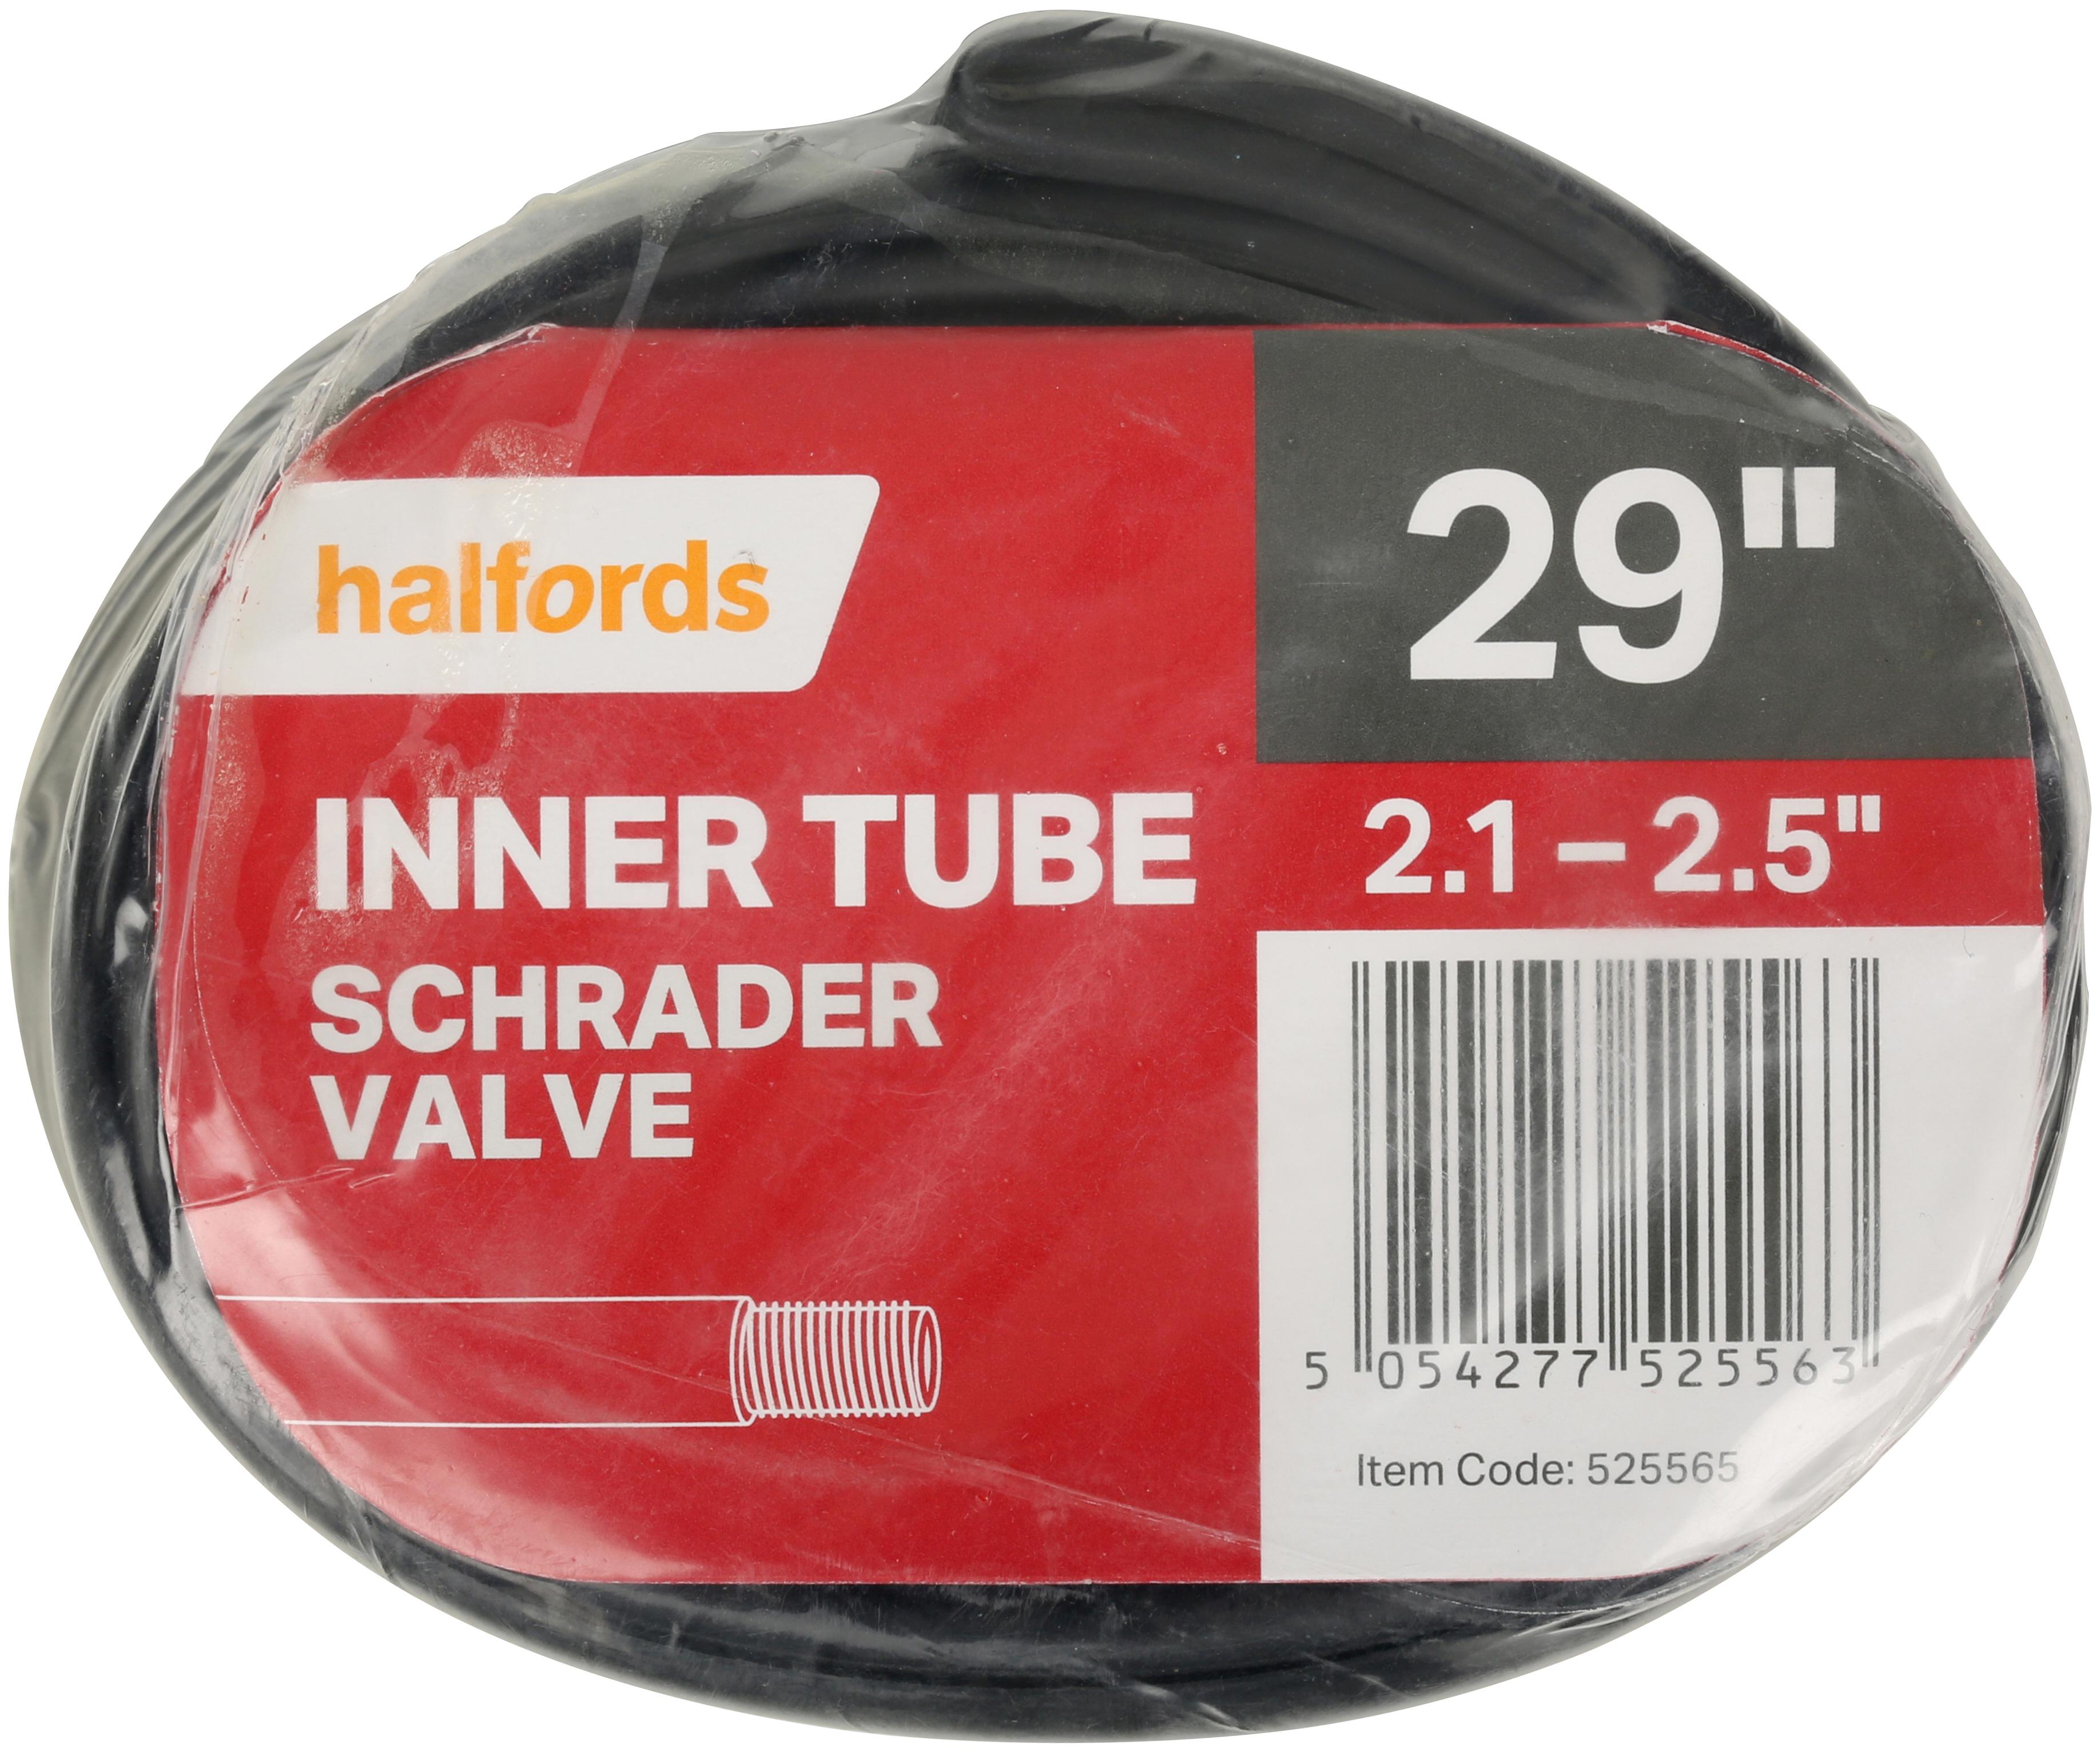 halfords tube